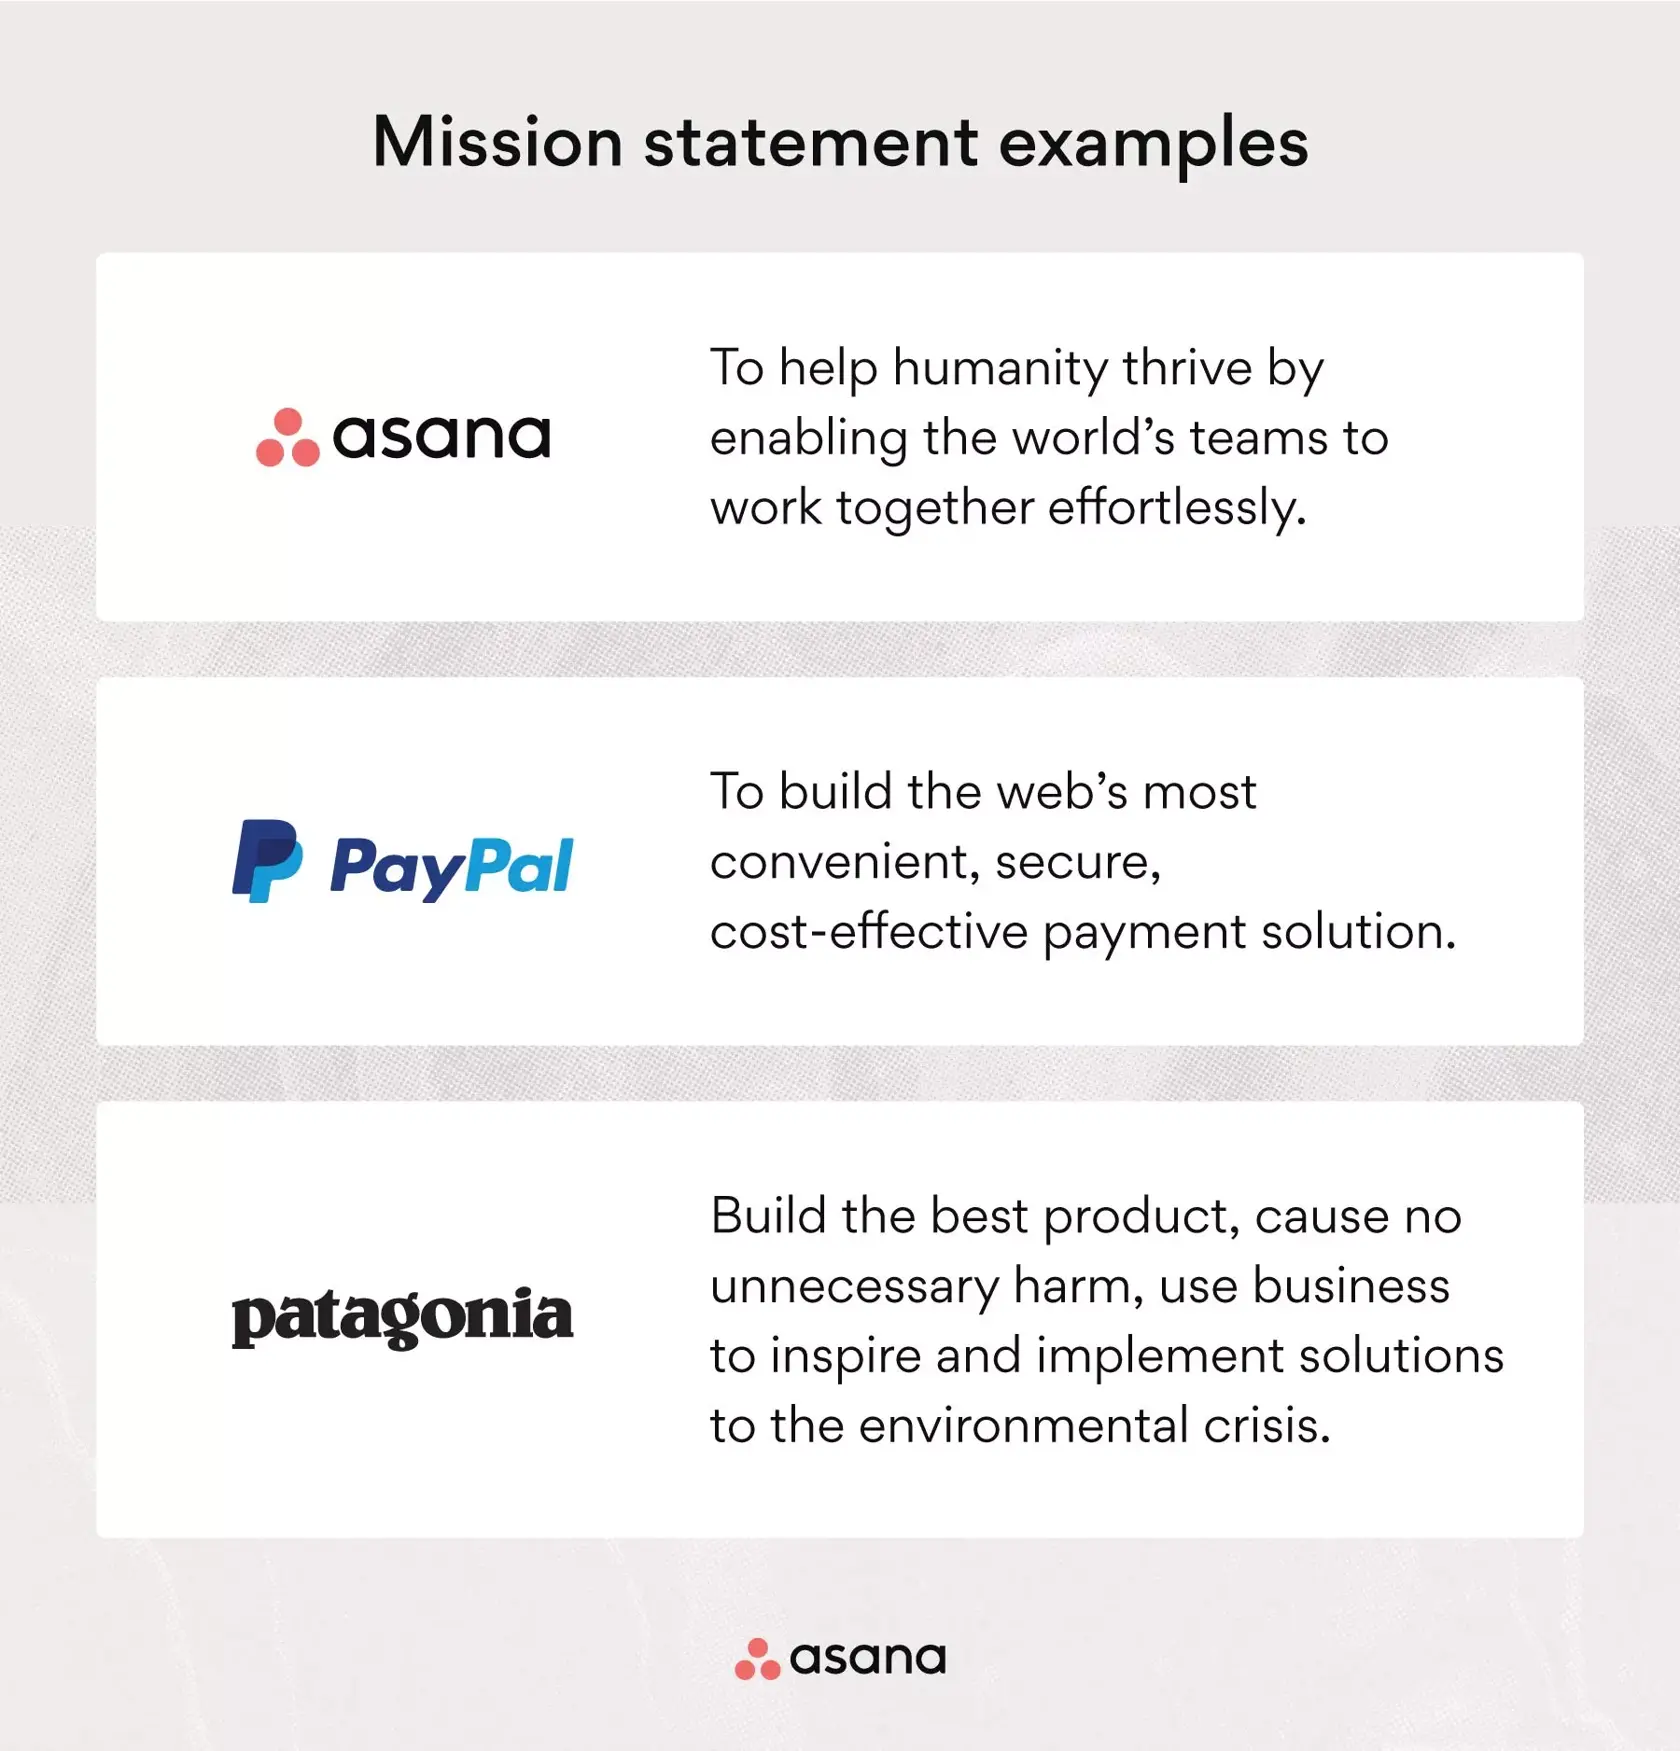 [Ilustración integrada] Ejemplos de declaraciones de misión: Asana, PayPal, Patagonia (ejemplos)